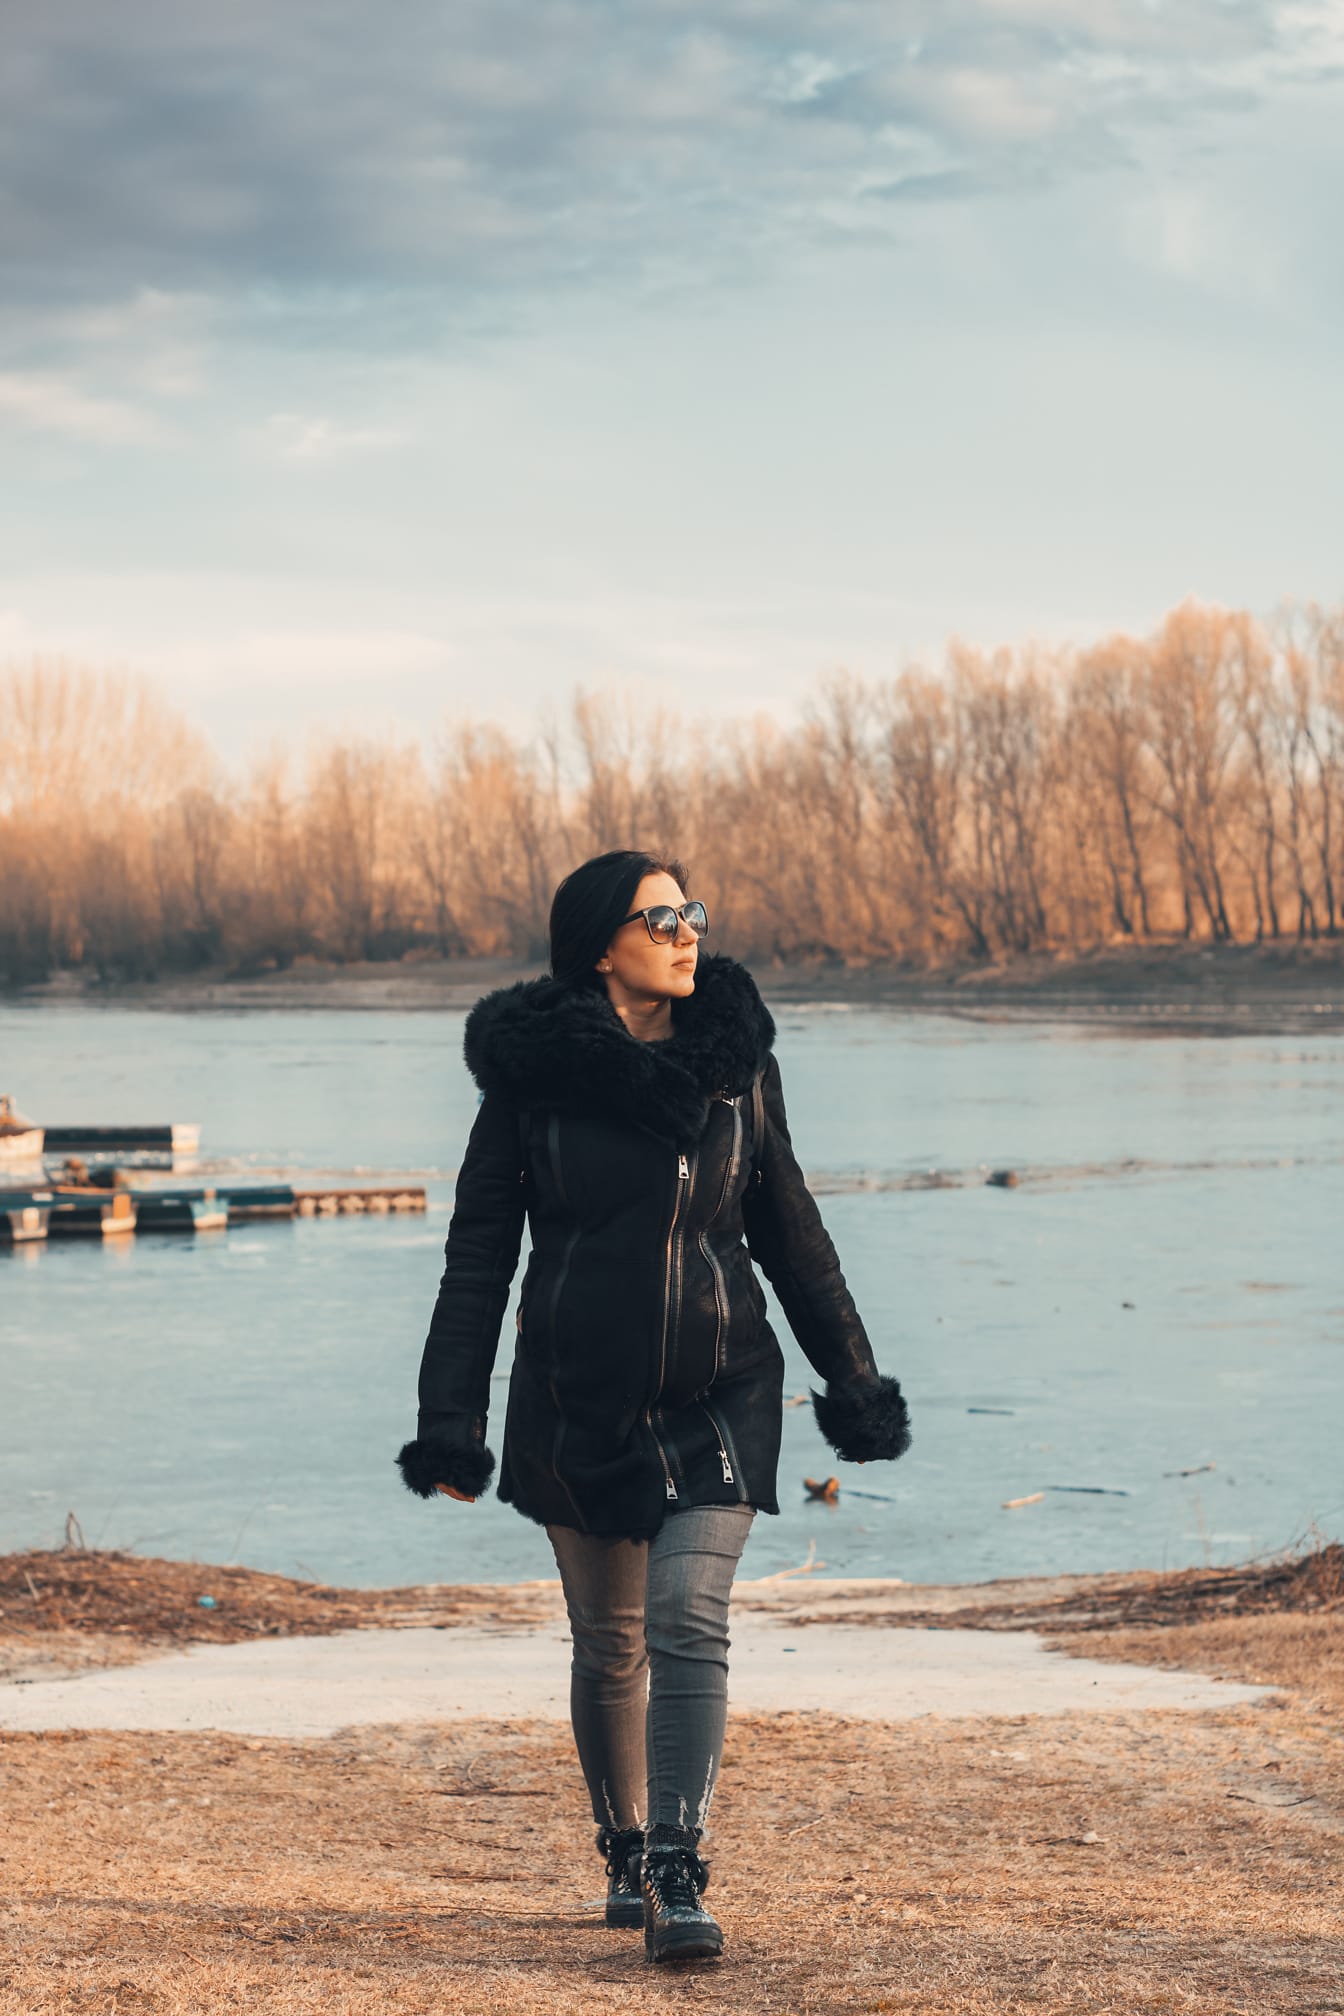 Junge Frau im Wintermantel und Sonnenbrille geht am Ufer des zugefrorenen Sees spazieren